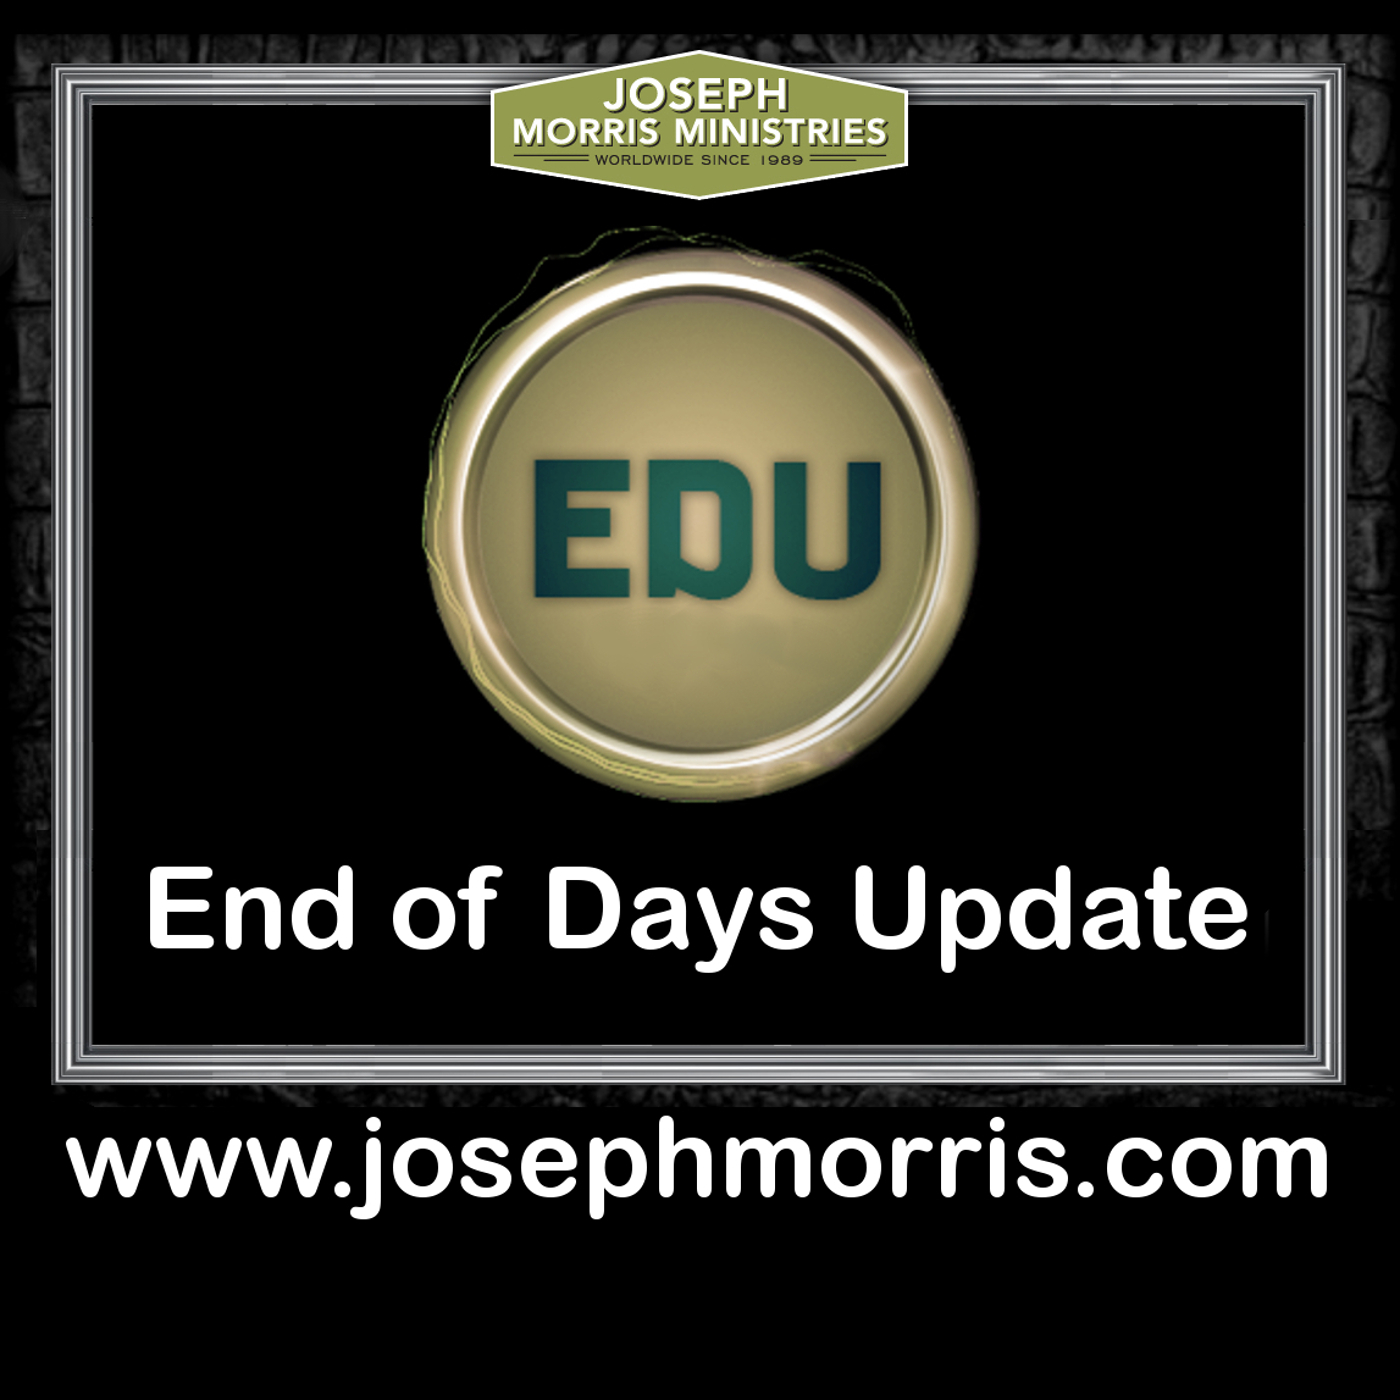 EDU - The End of Days Update - SpeakFaith.TV - Rev. Joseph Morris